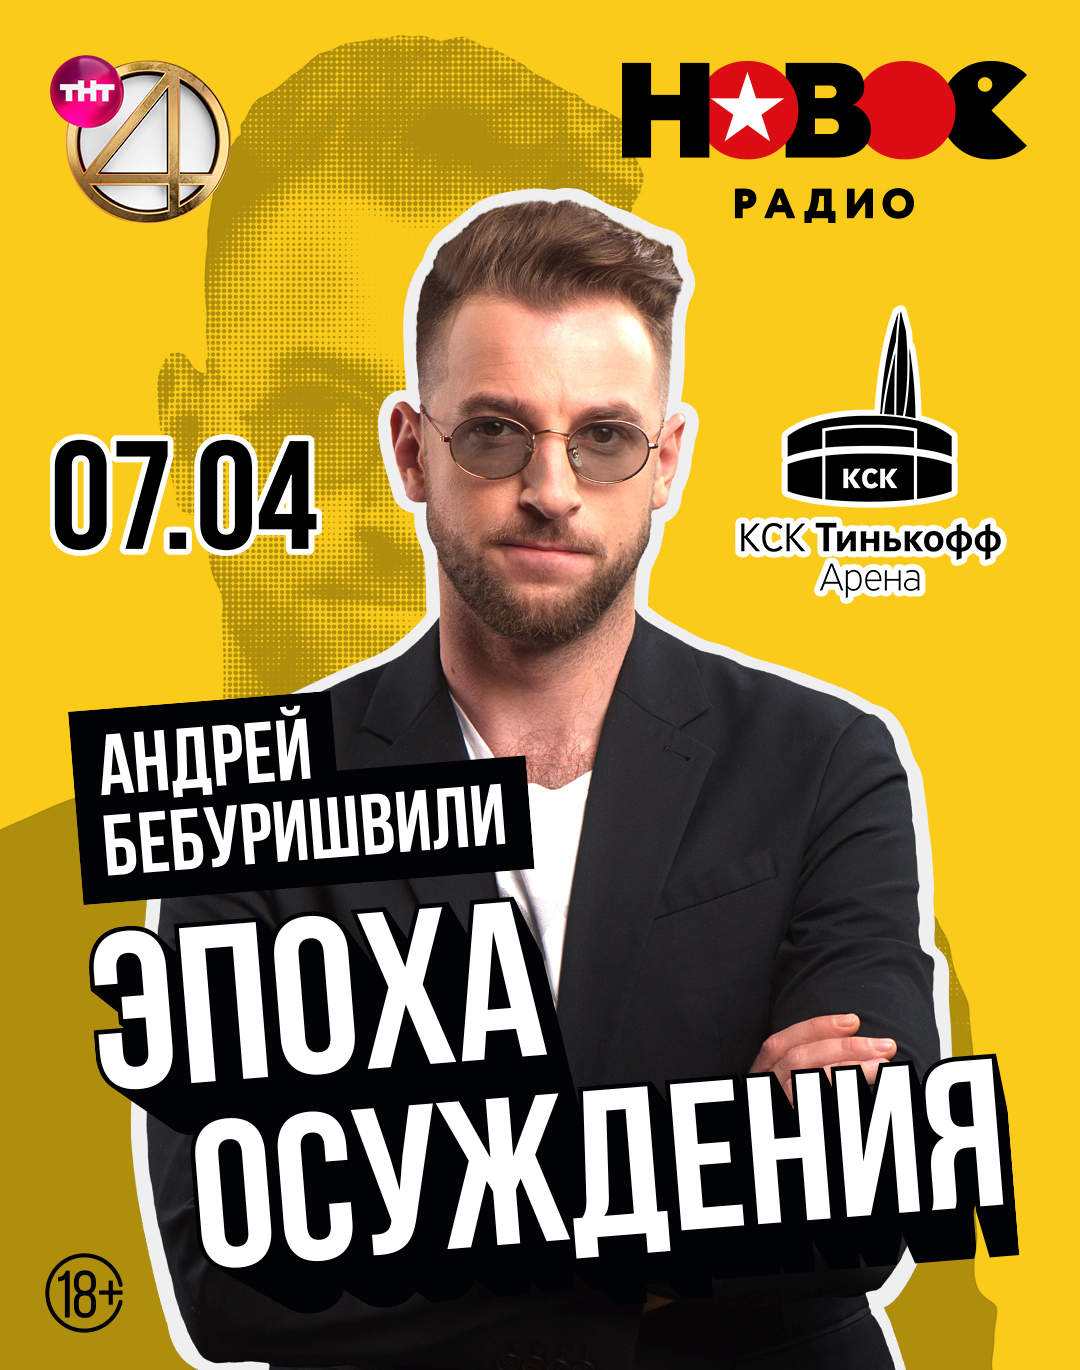 7 апреля - Андрей Бебуришвили, Тинькофф арена (СПб)